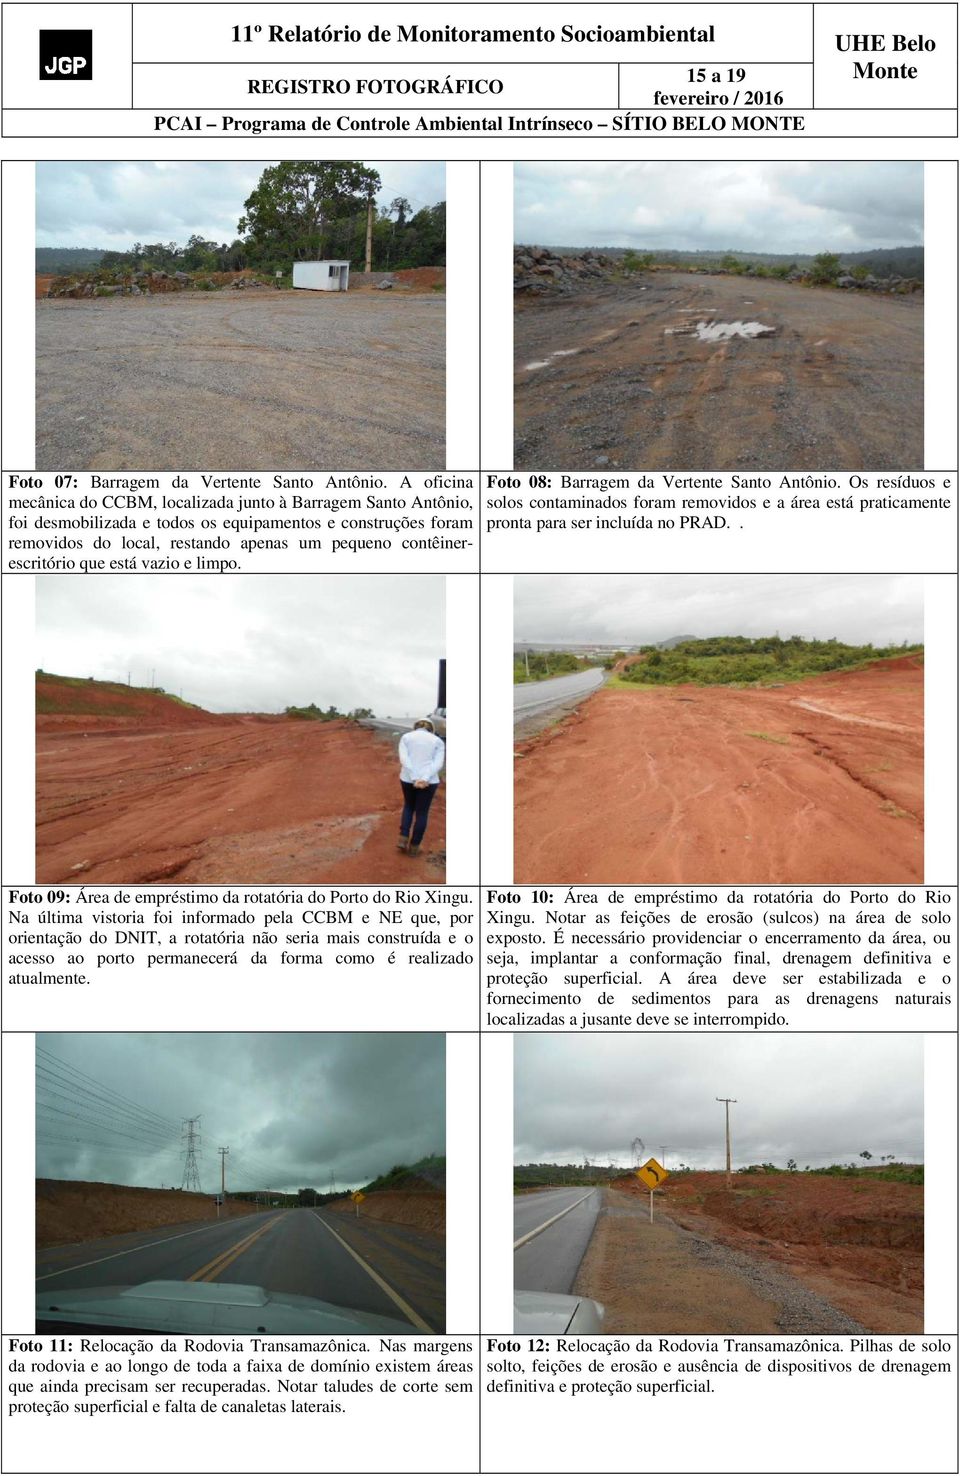 que está vazio e limpo. Foto 08: Barragem da Vertente Santo Antônio. Os resíduos e solos contaminados foram removidos e a área está praticamente pronta para ser incluída no PRAD.